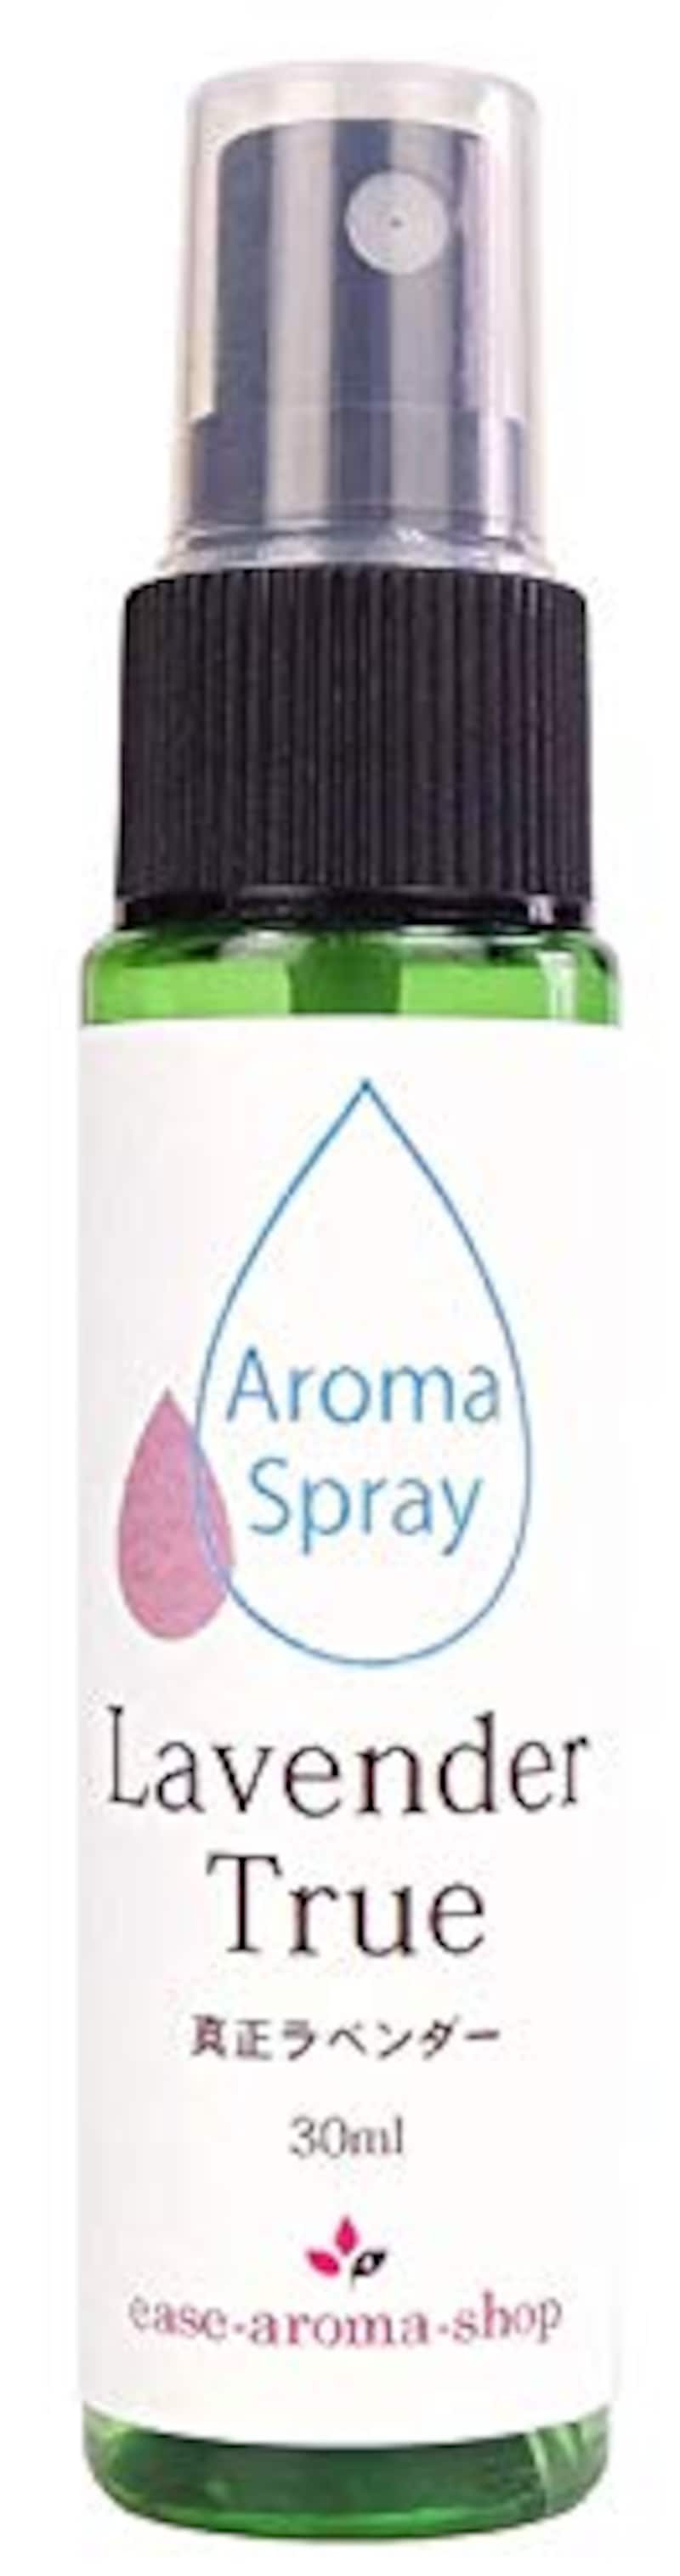 ease-aroma（イーズアロマ）,NEW アロマスプレー 真正ラベンダー